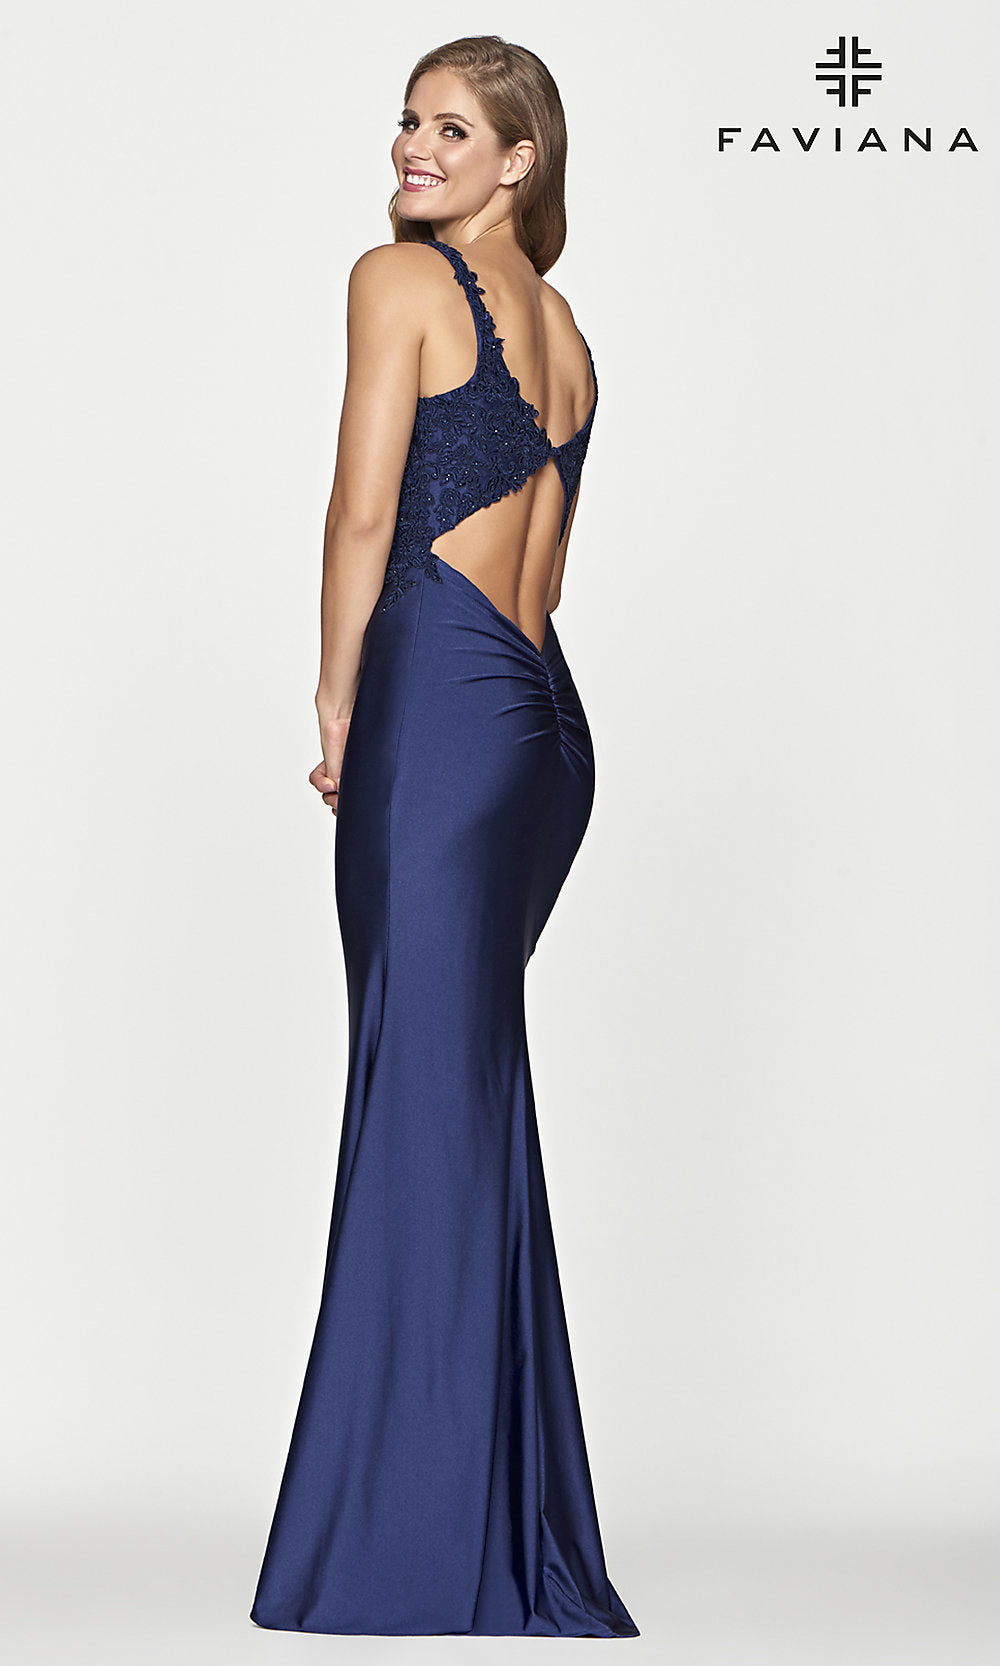  Low V-Neck Navy Blue Long Prom Dress by Faviana